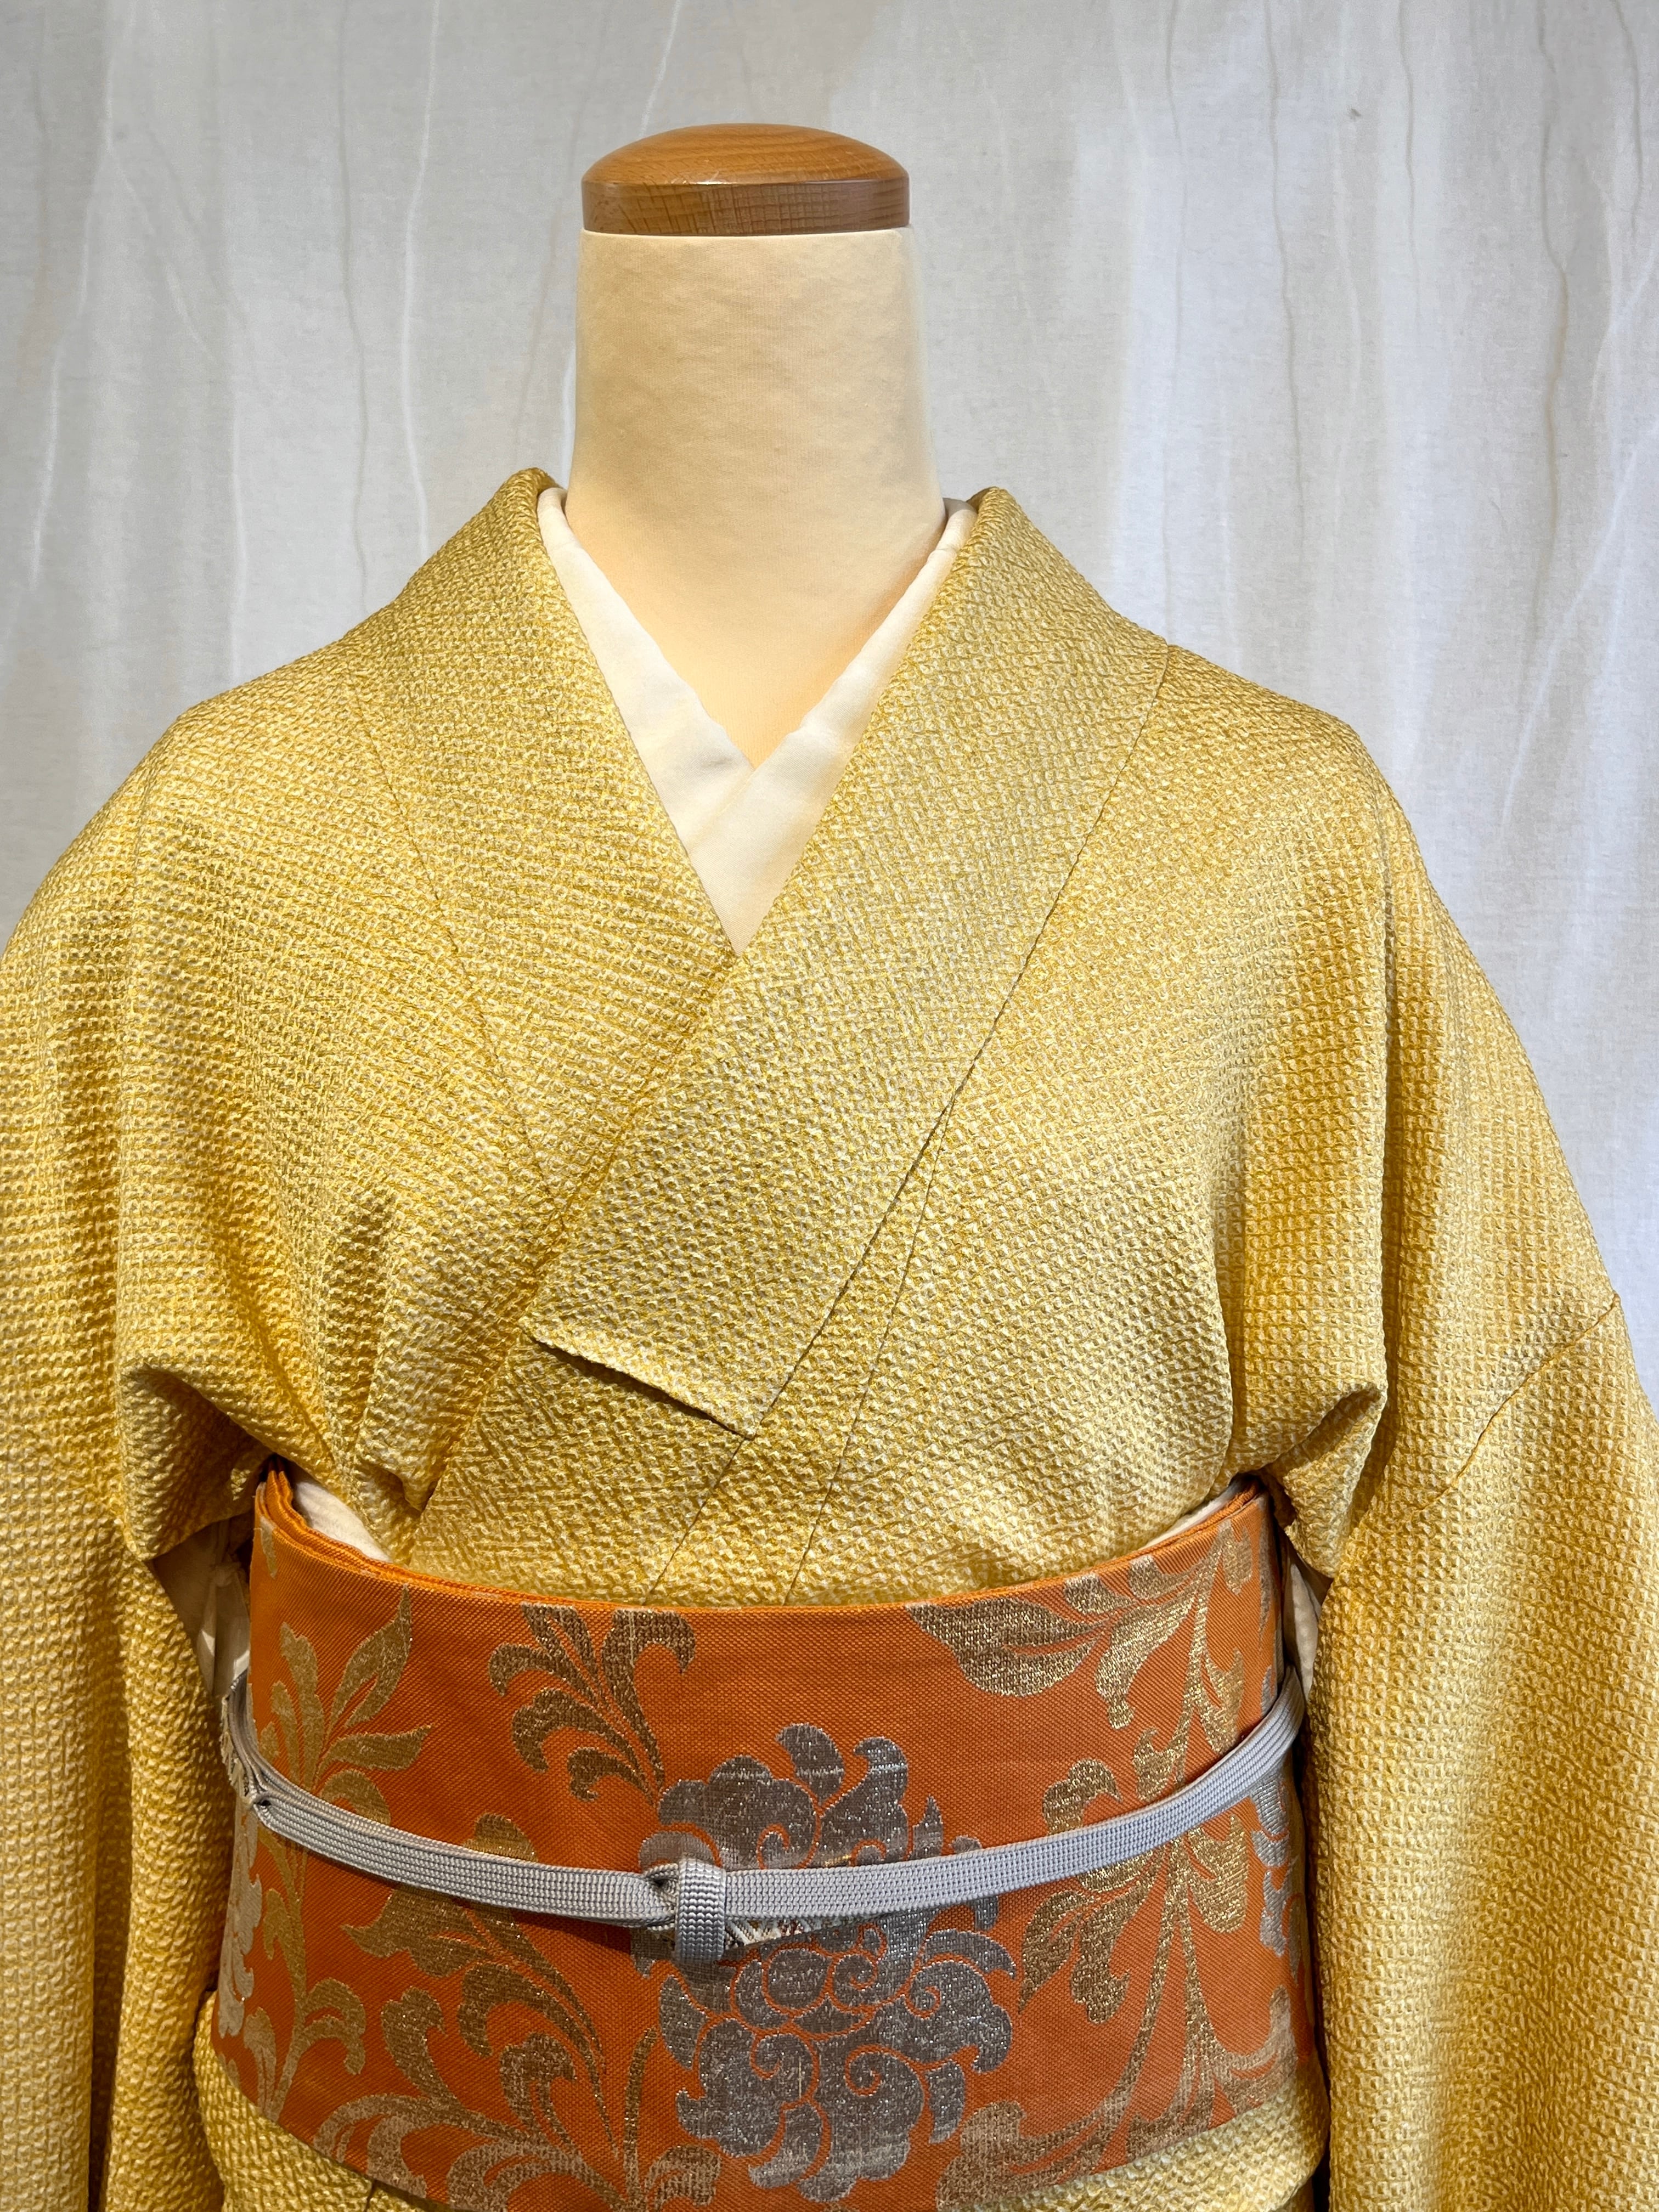 2302 高身長 総絞り 小紋 Komon Kimono | リサイクル着物ショップ La遇 Used Kimono Shop Lagu  powered by BASE